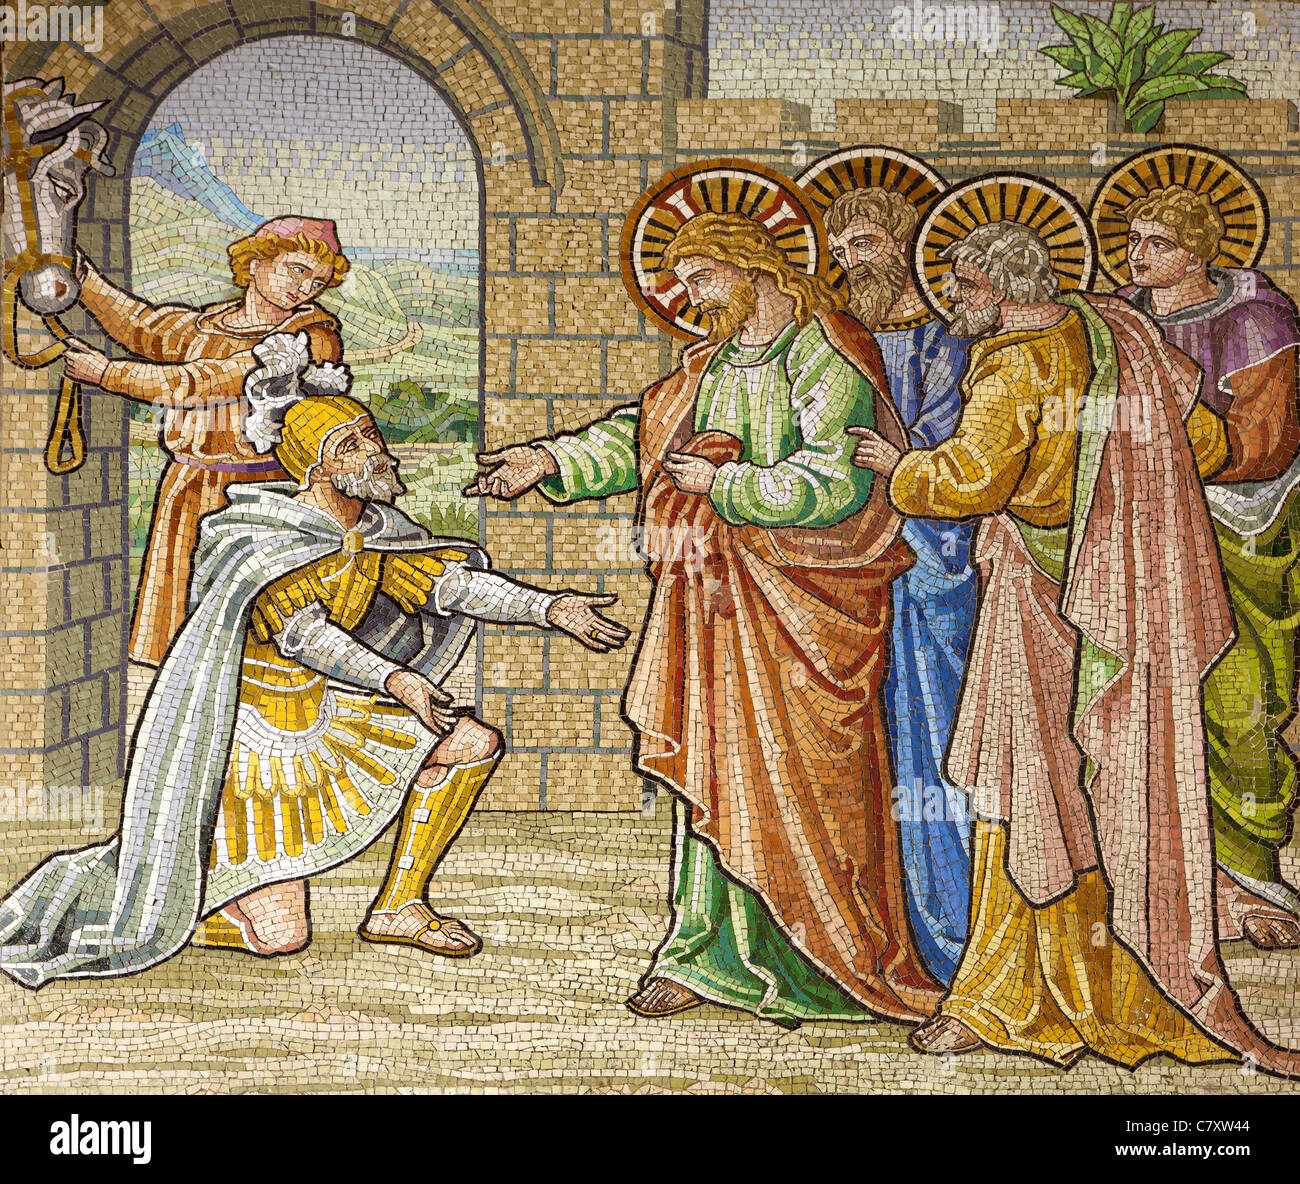 Milano - mosaico - Appello del soldato romano per Gesù - San Agostino Foto Stock